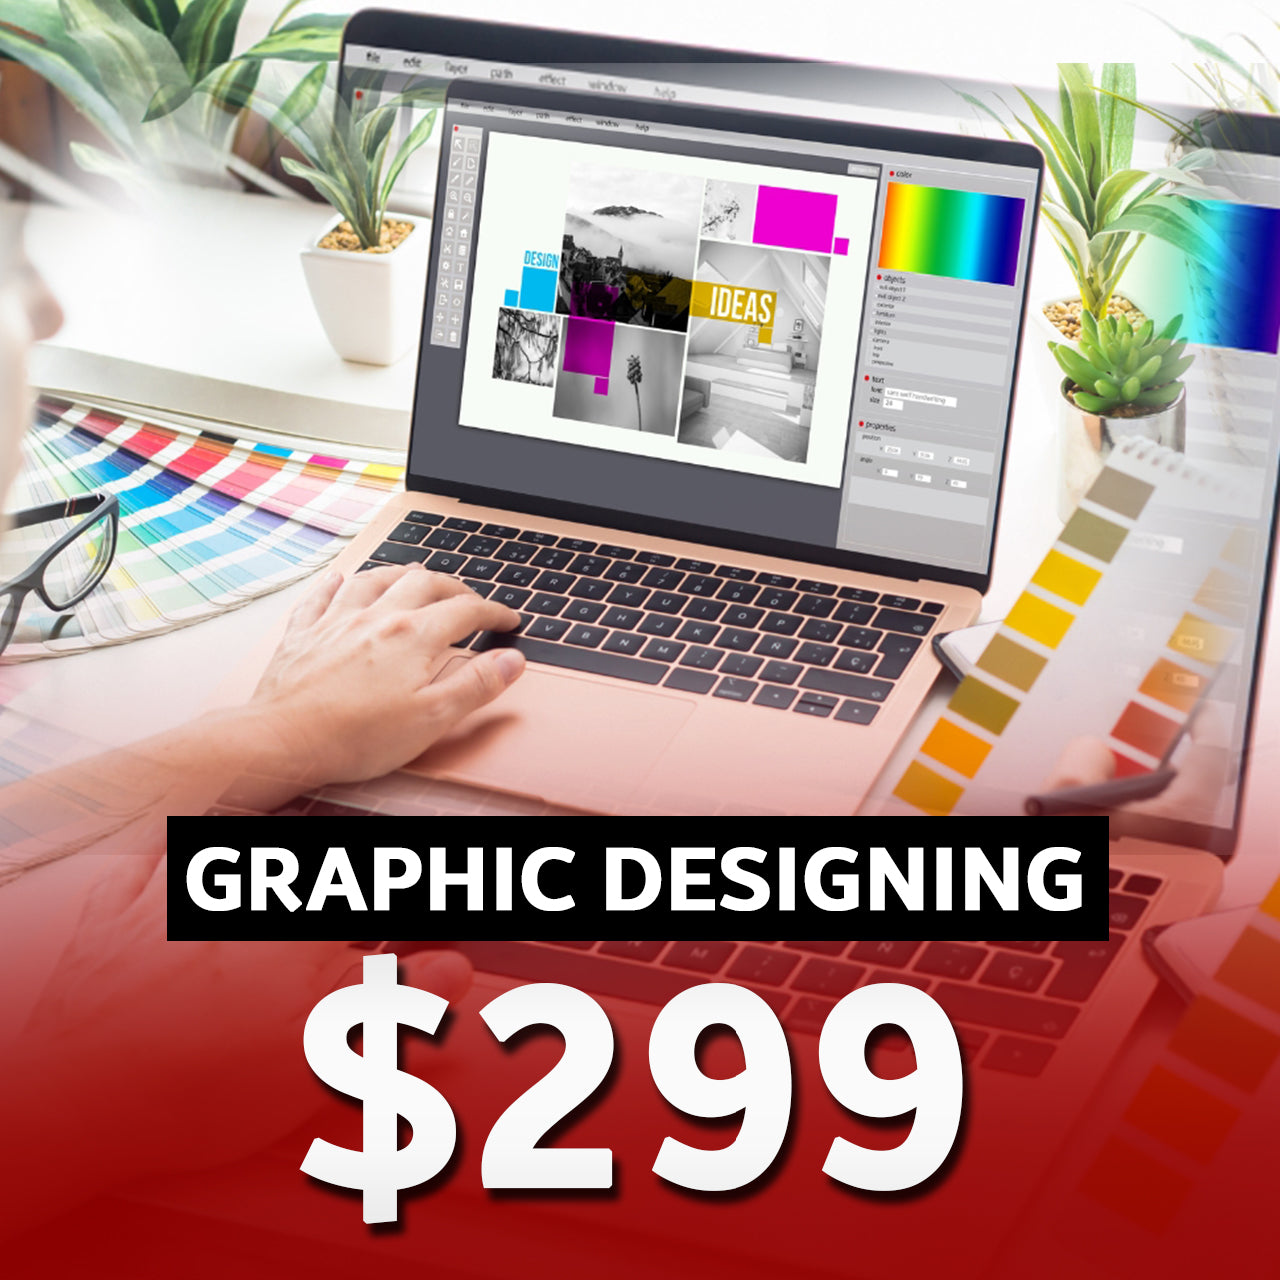 GRAPHIC DESIGNING-$299